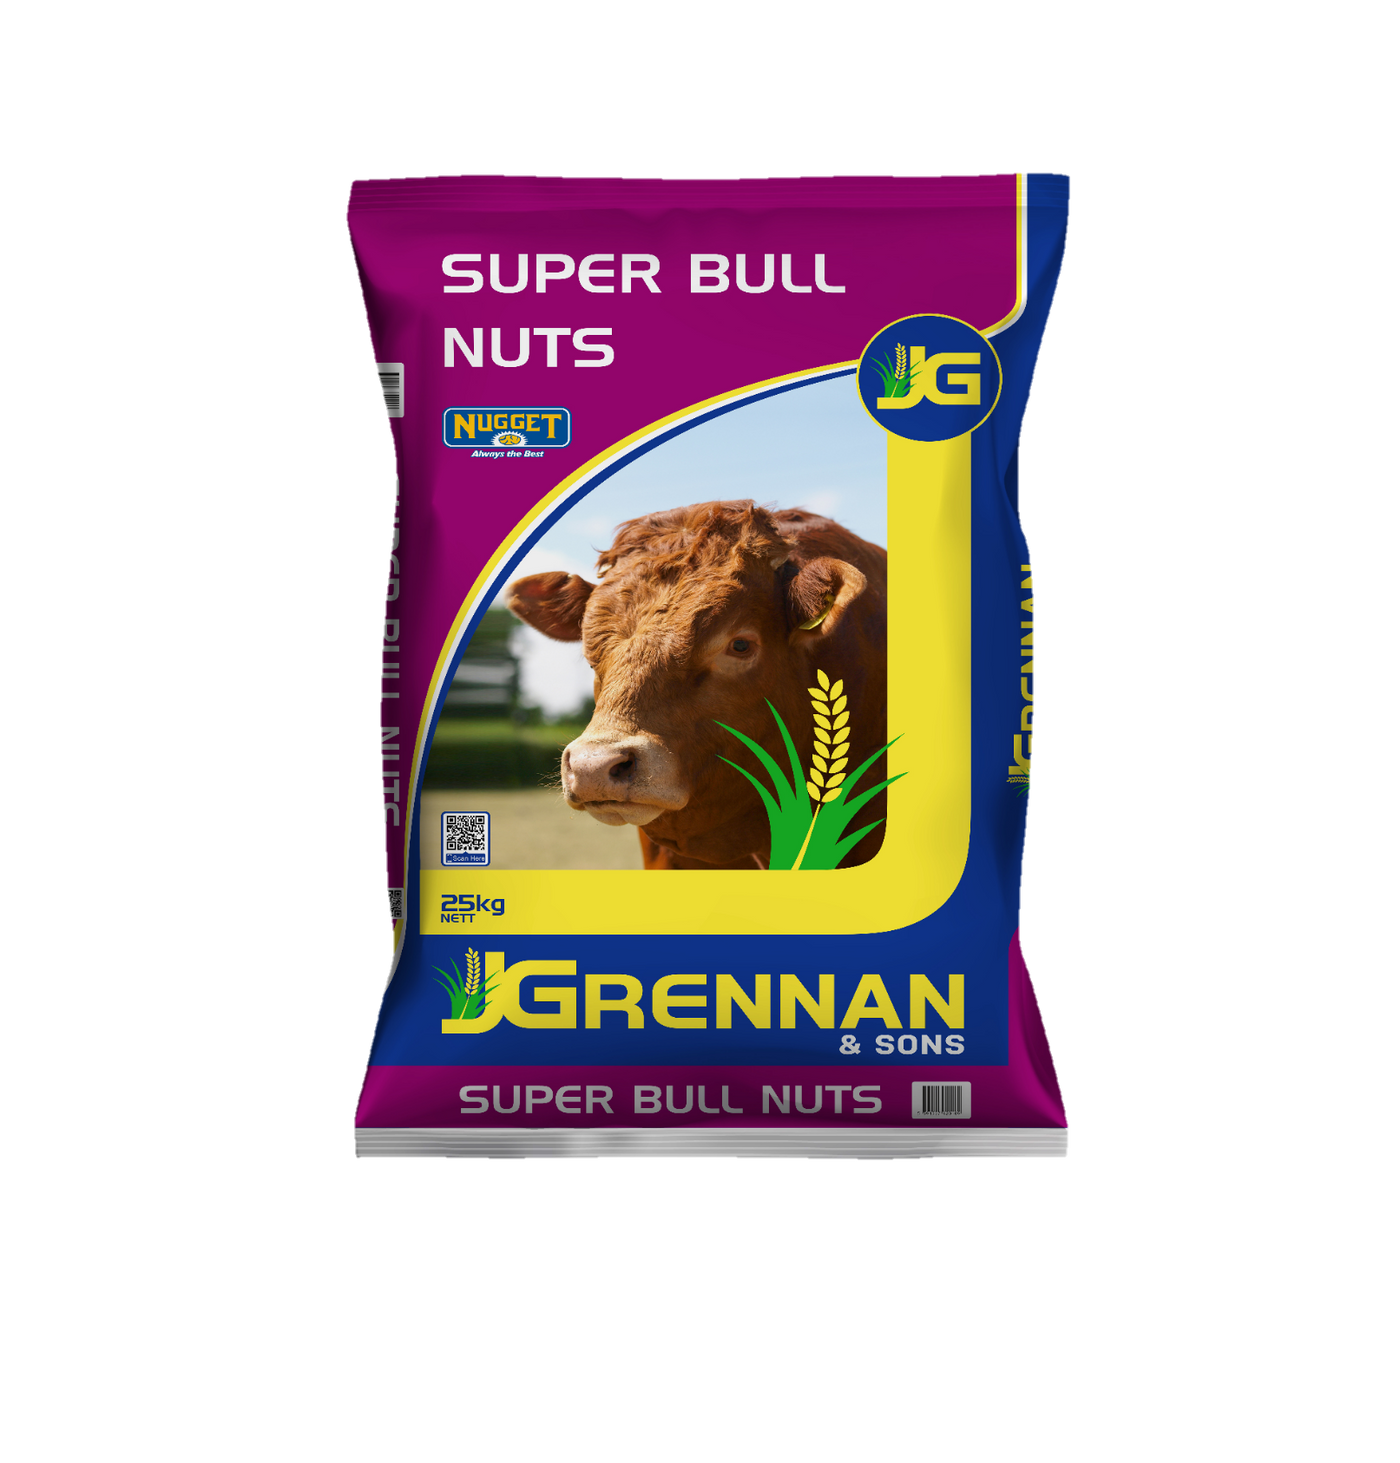 Super Bull Nuts